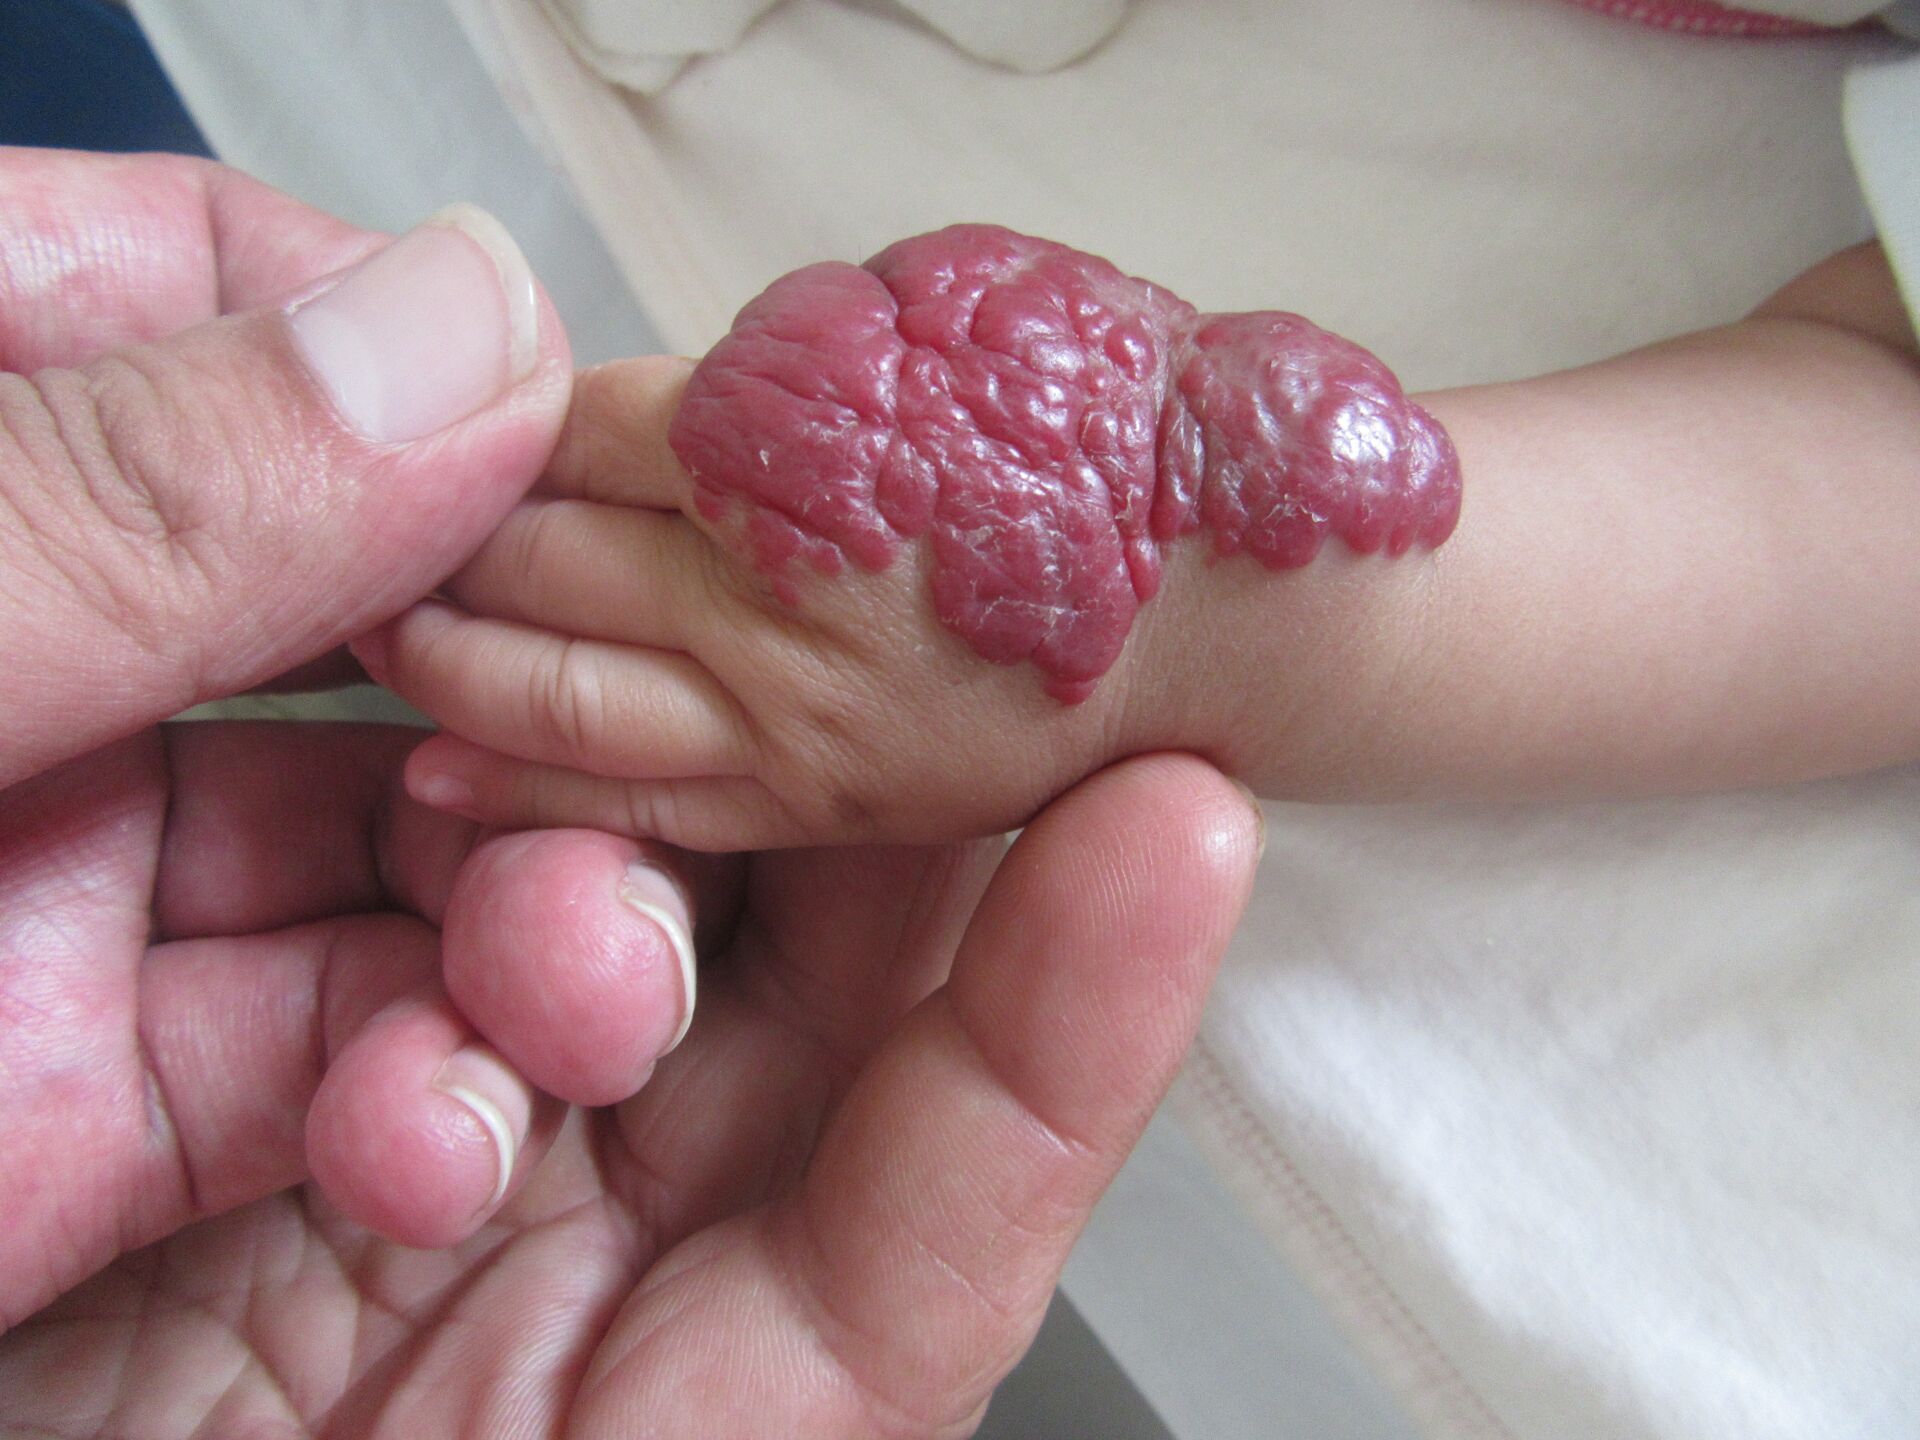 婴幼儿手部血管瘤,成因和症状一目了然!